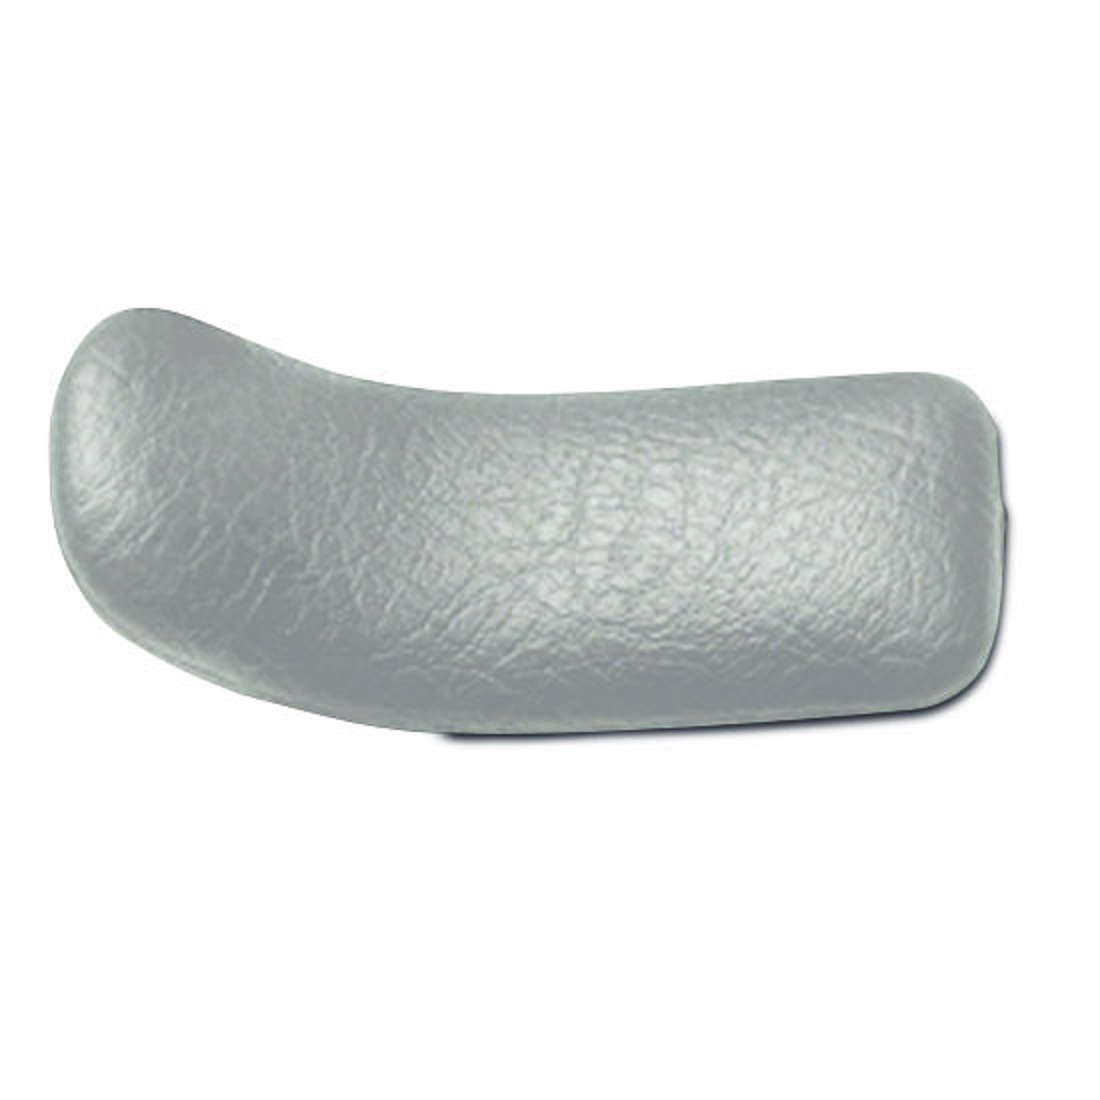 15411_Curved cushion no.3_grey.jpg